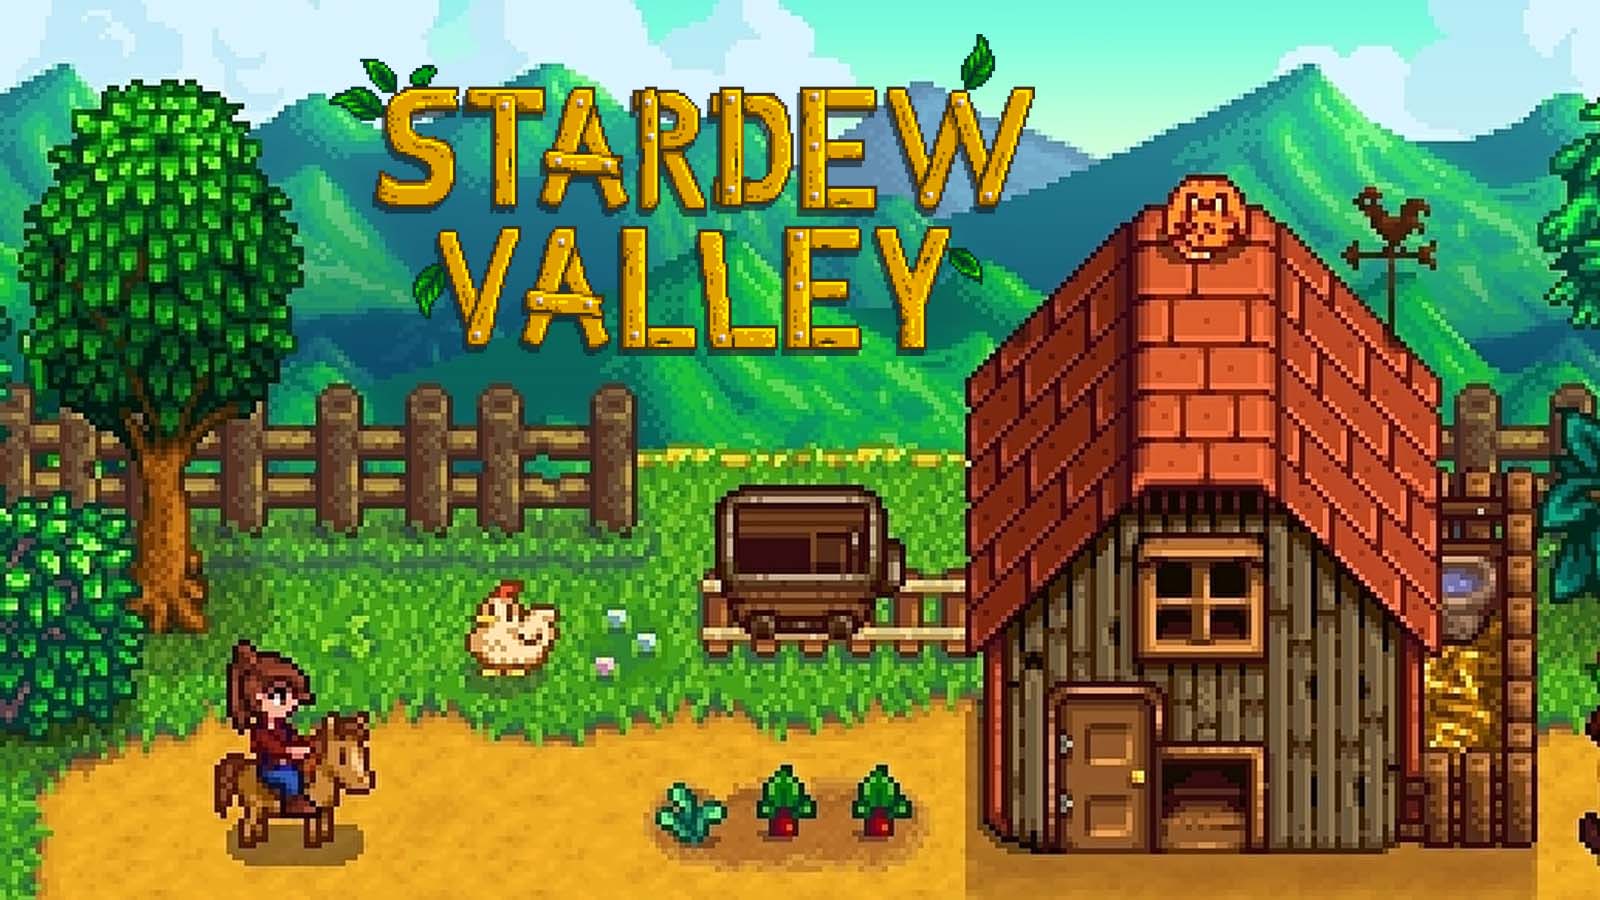 Stardew Valley 1.6 Update Has 8-Player Multiplayer, New Festivals